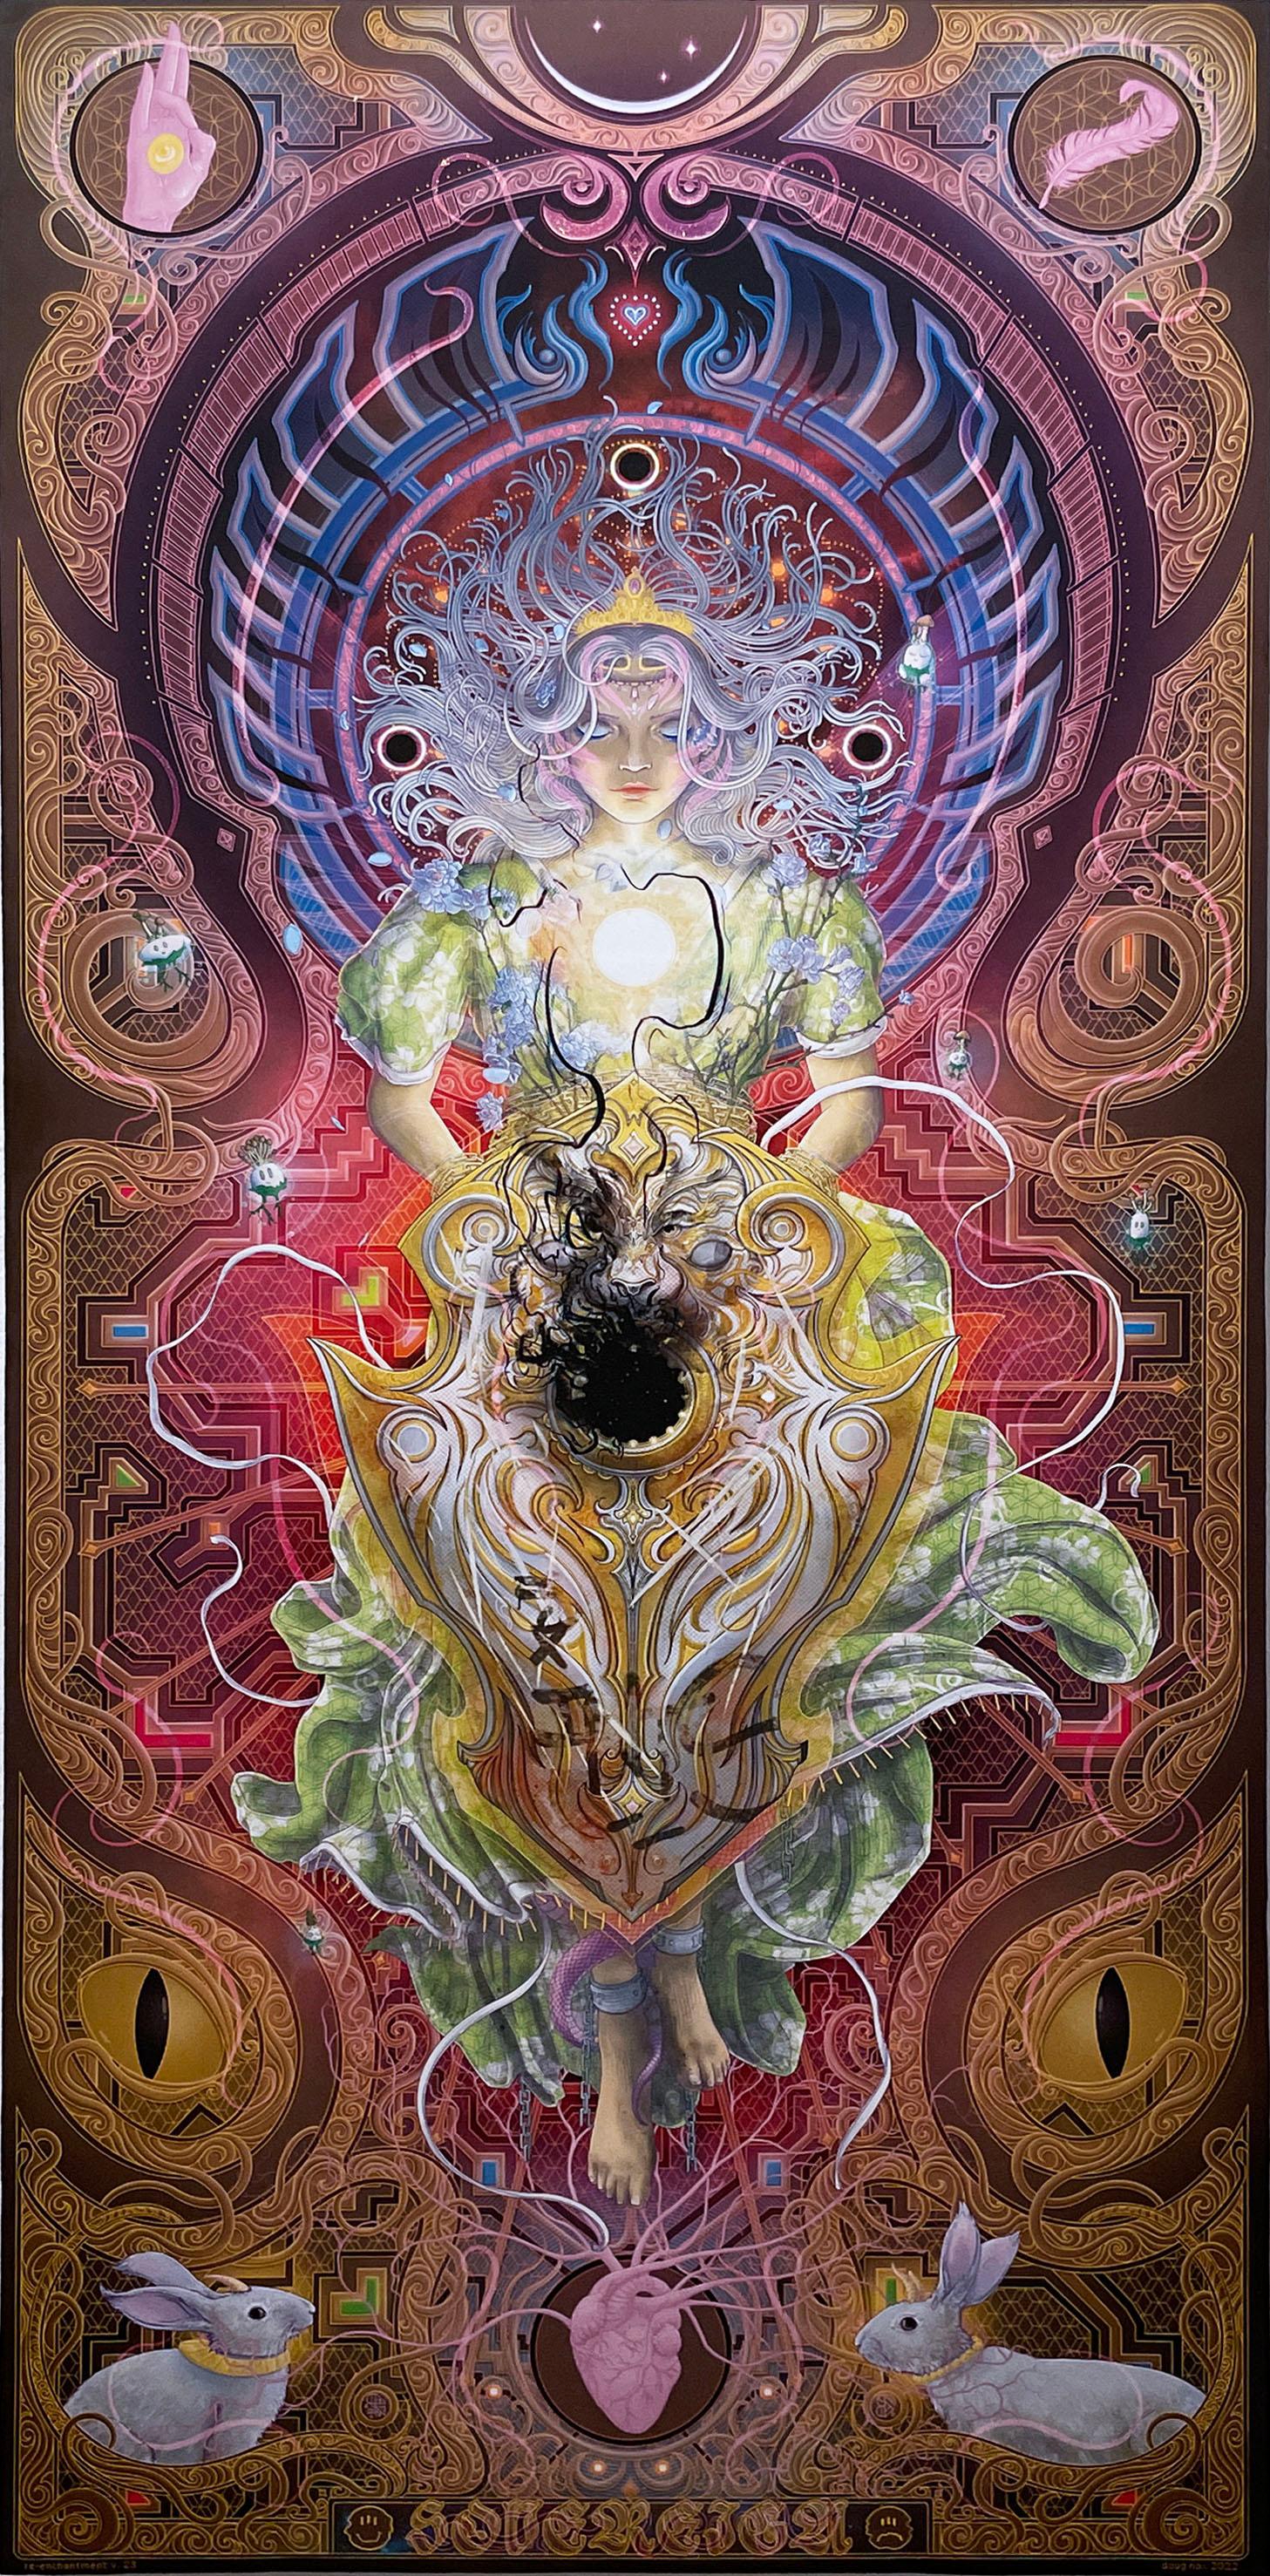 Sovereign Shield (2022) von Doug Nox (Harlequinade), psychedelisch, kosmisch, Giclée